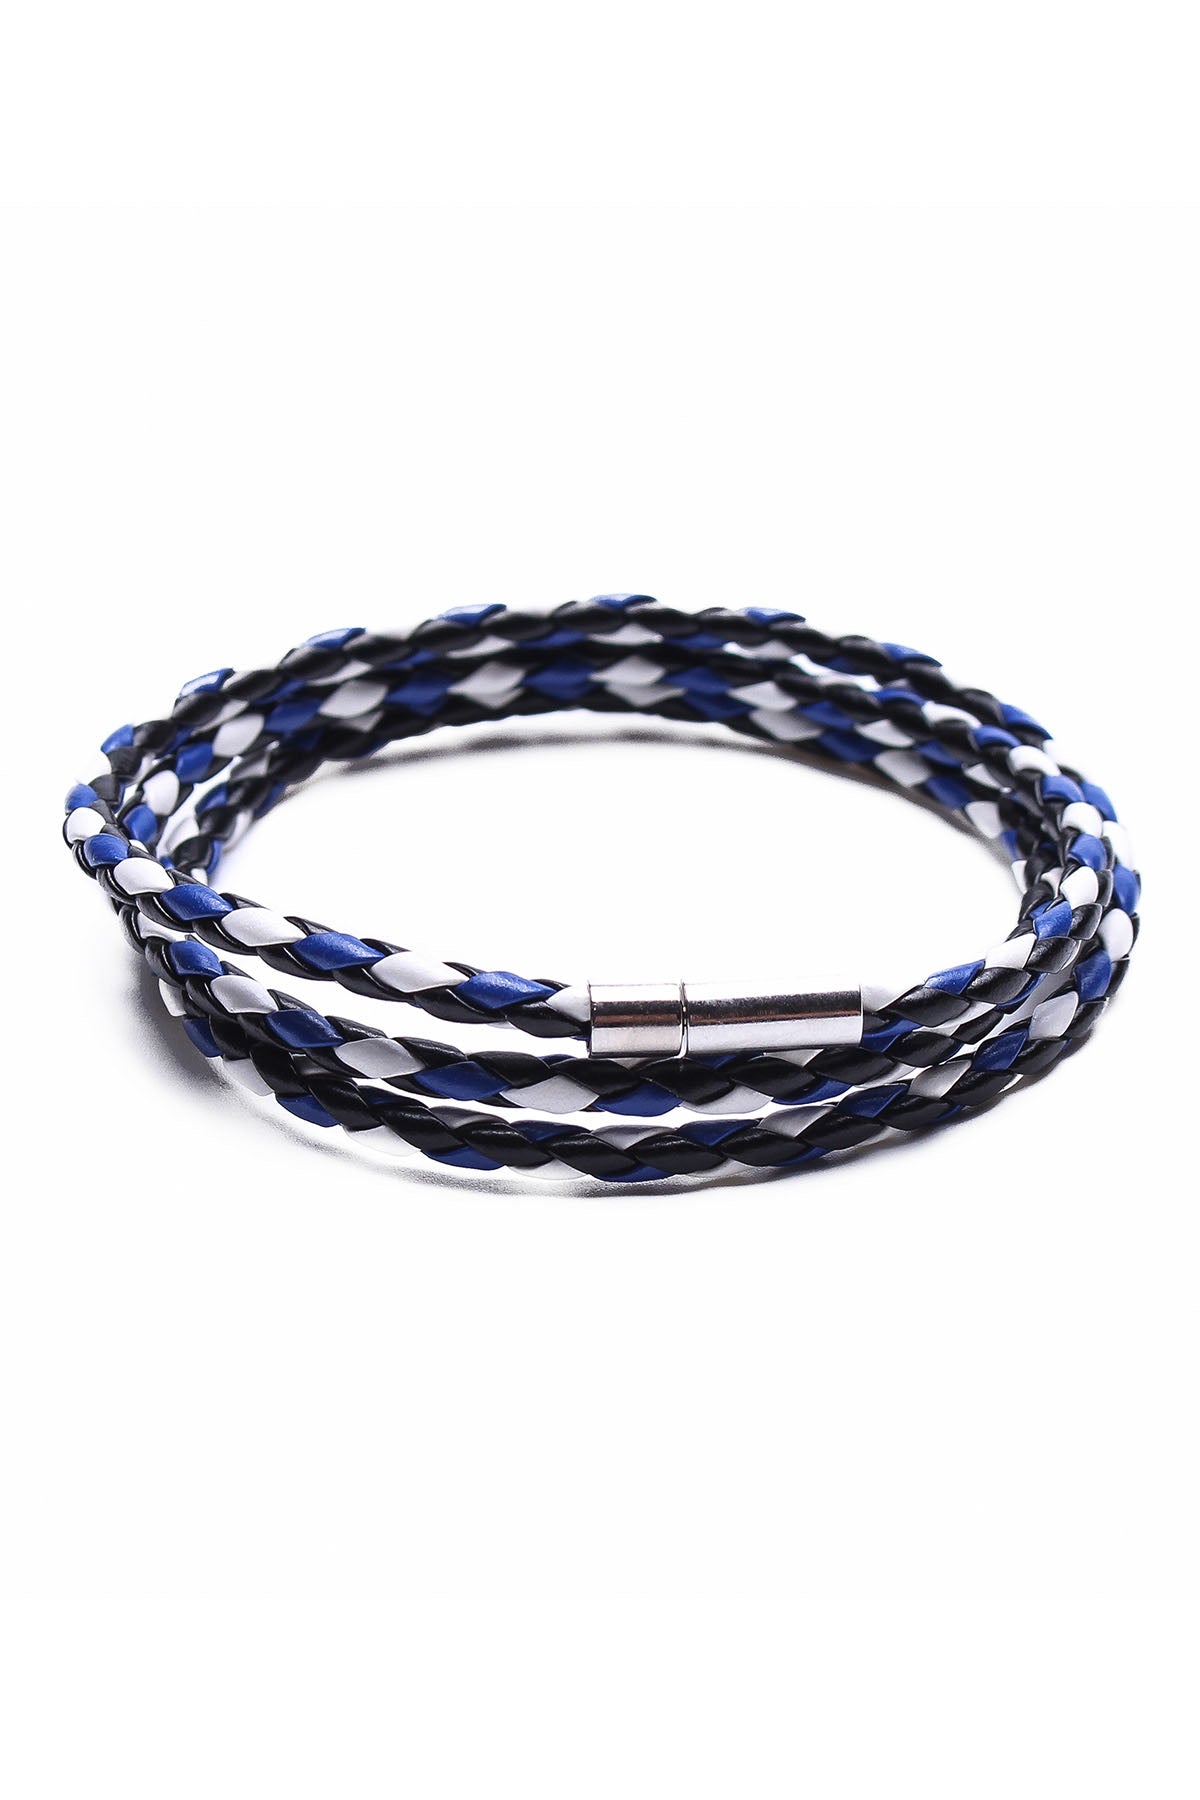 Something Strong Blue & White Vegan Leather Bracelet